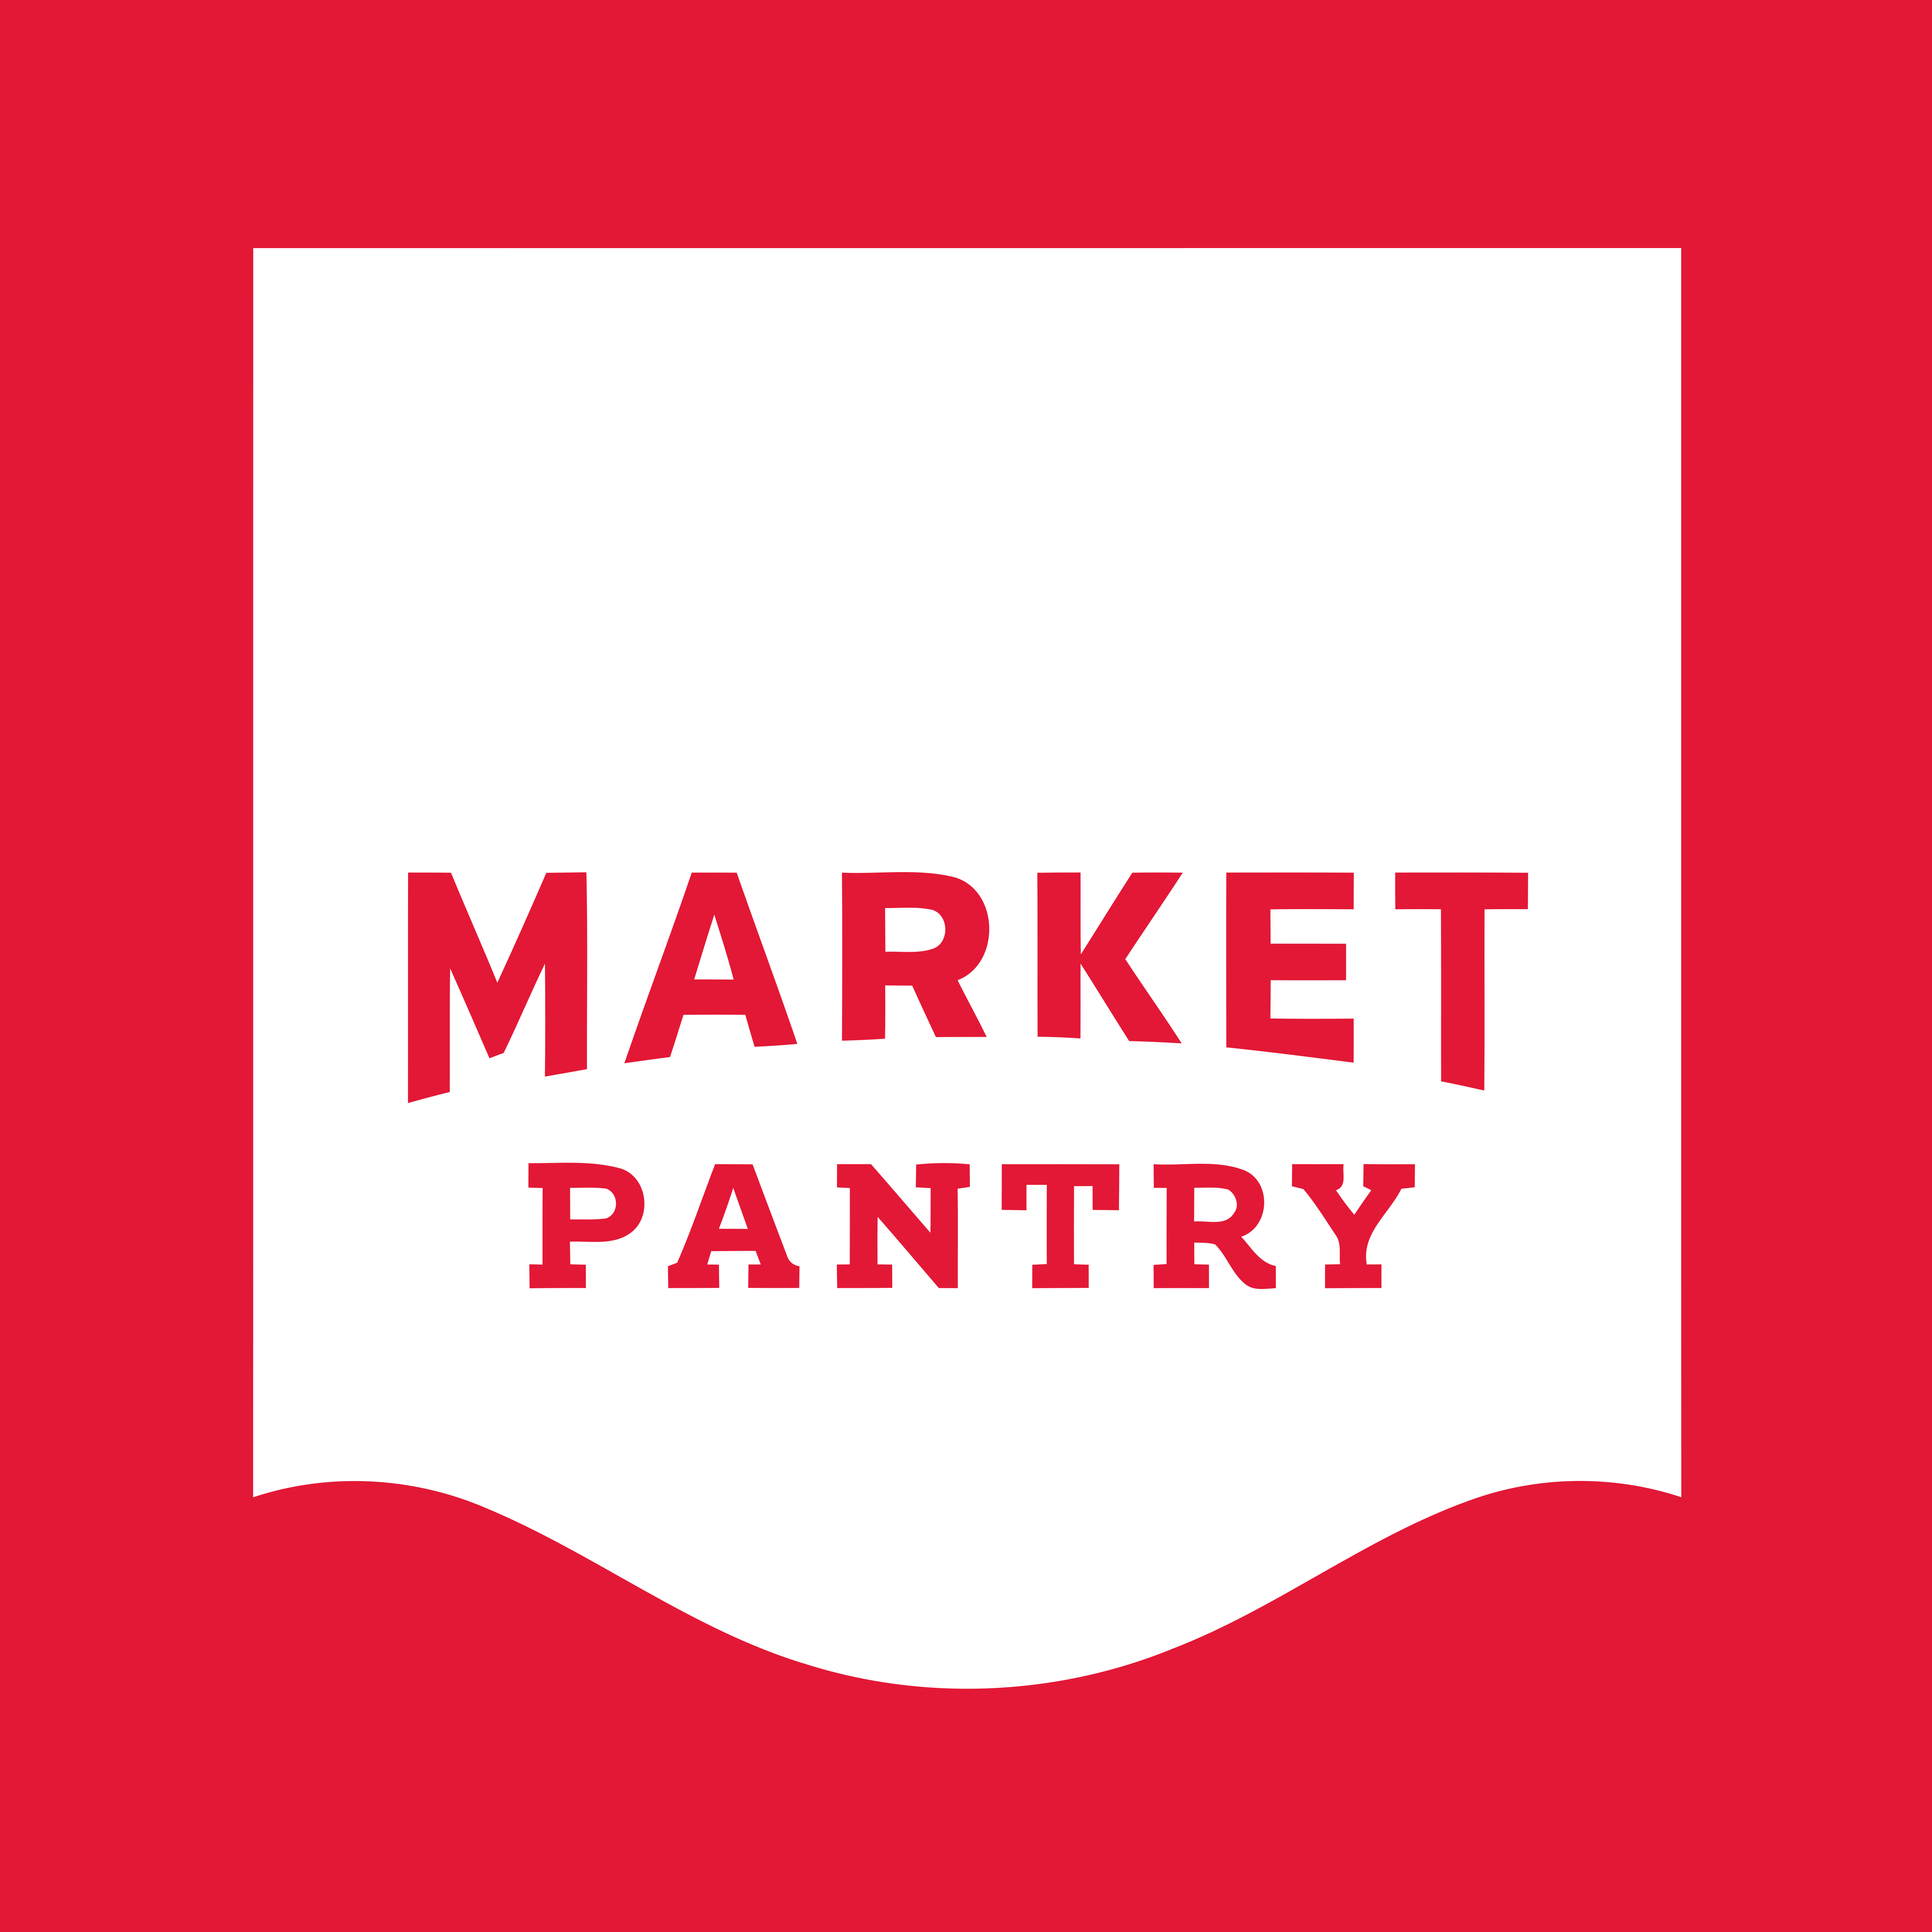 Market Pantry – Logos Download